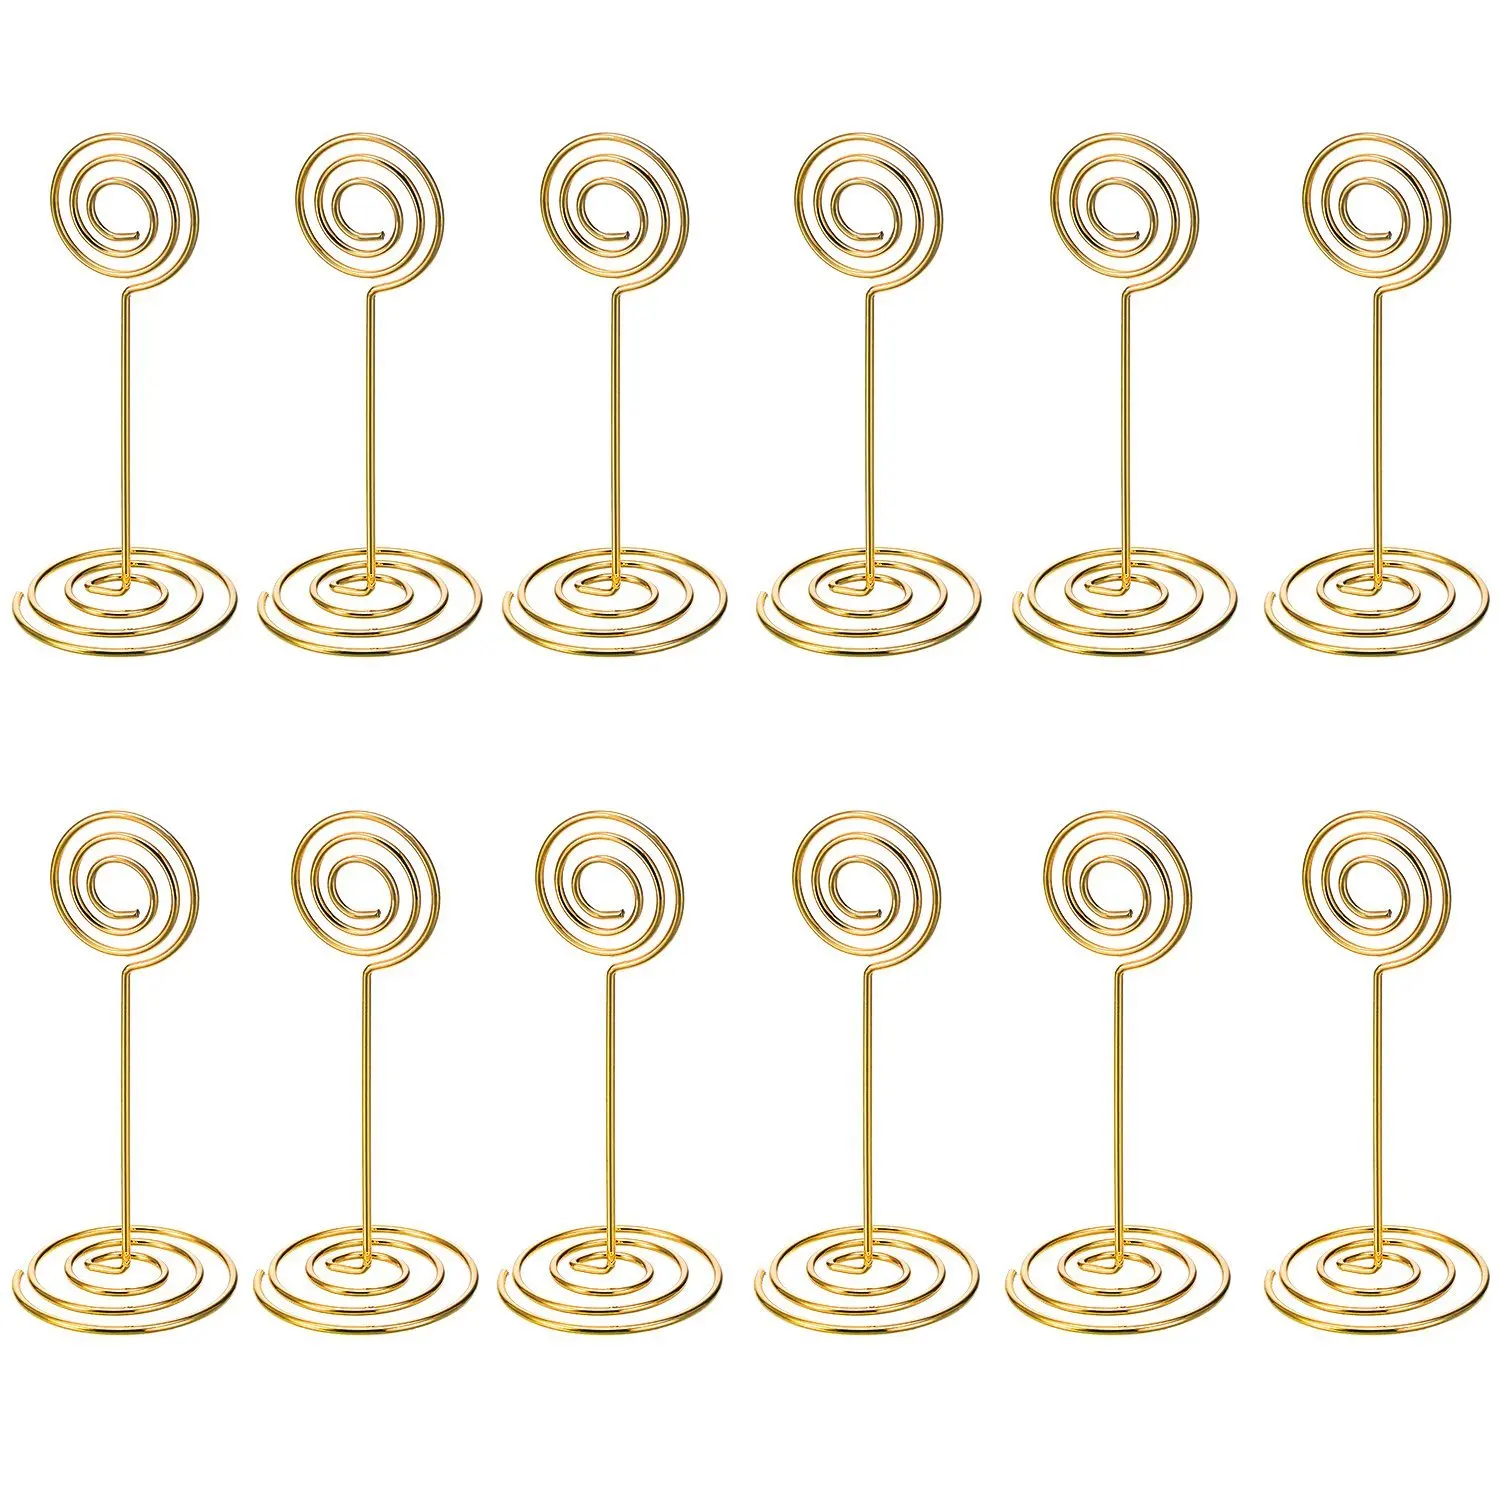 BLEL Горячая 12 Упаковка стол номер держателя карты фото держатель подставки место зажимы для бумаги, для меню, круглая форма(золото